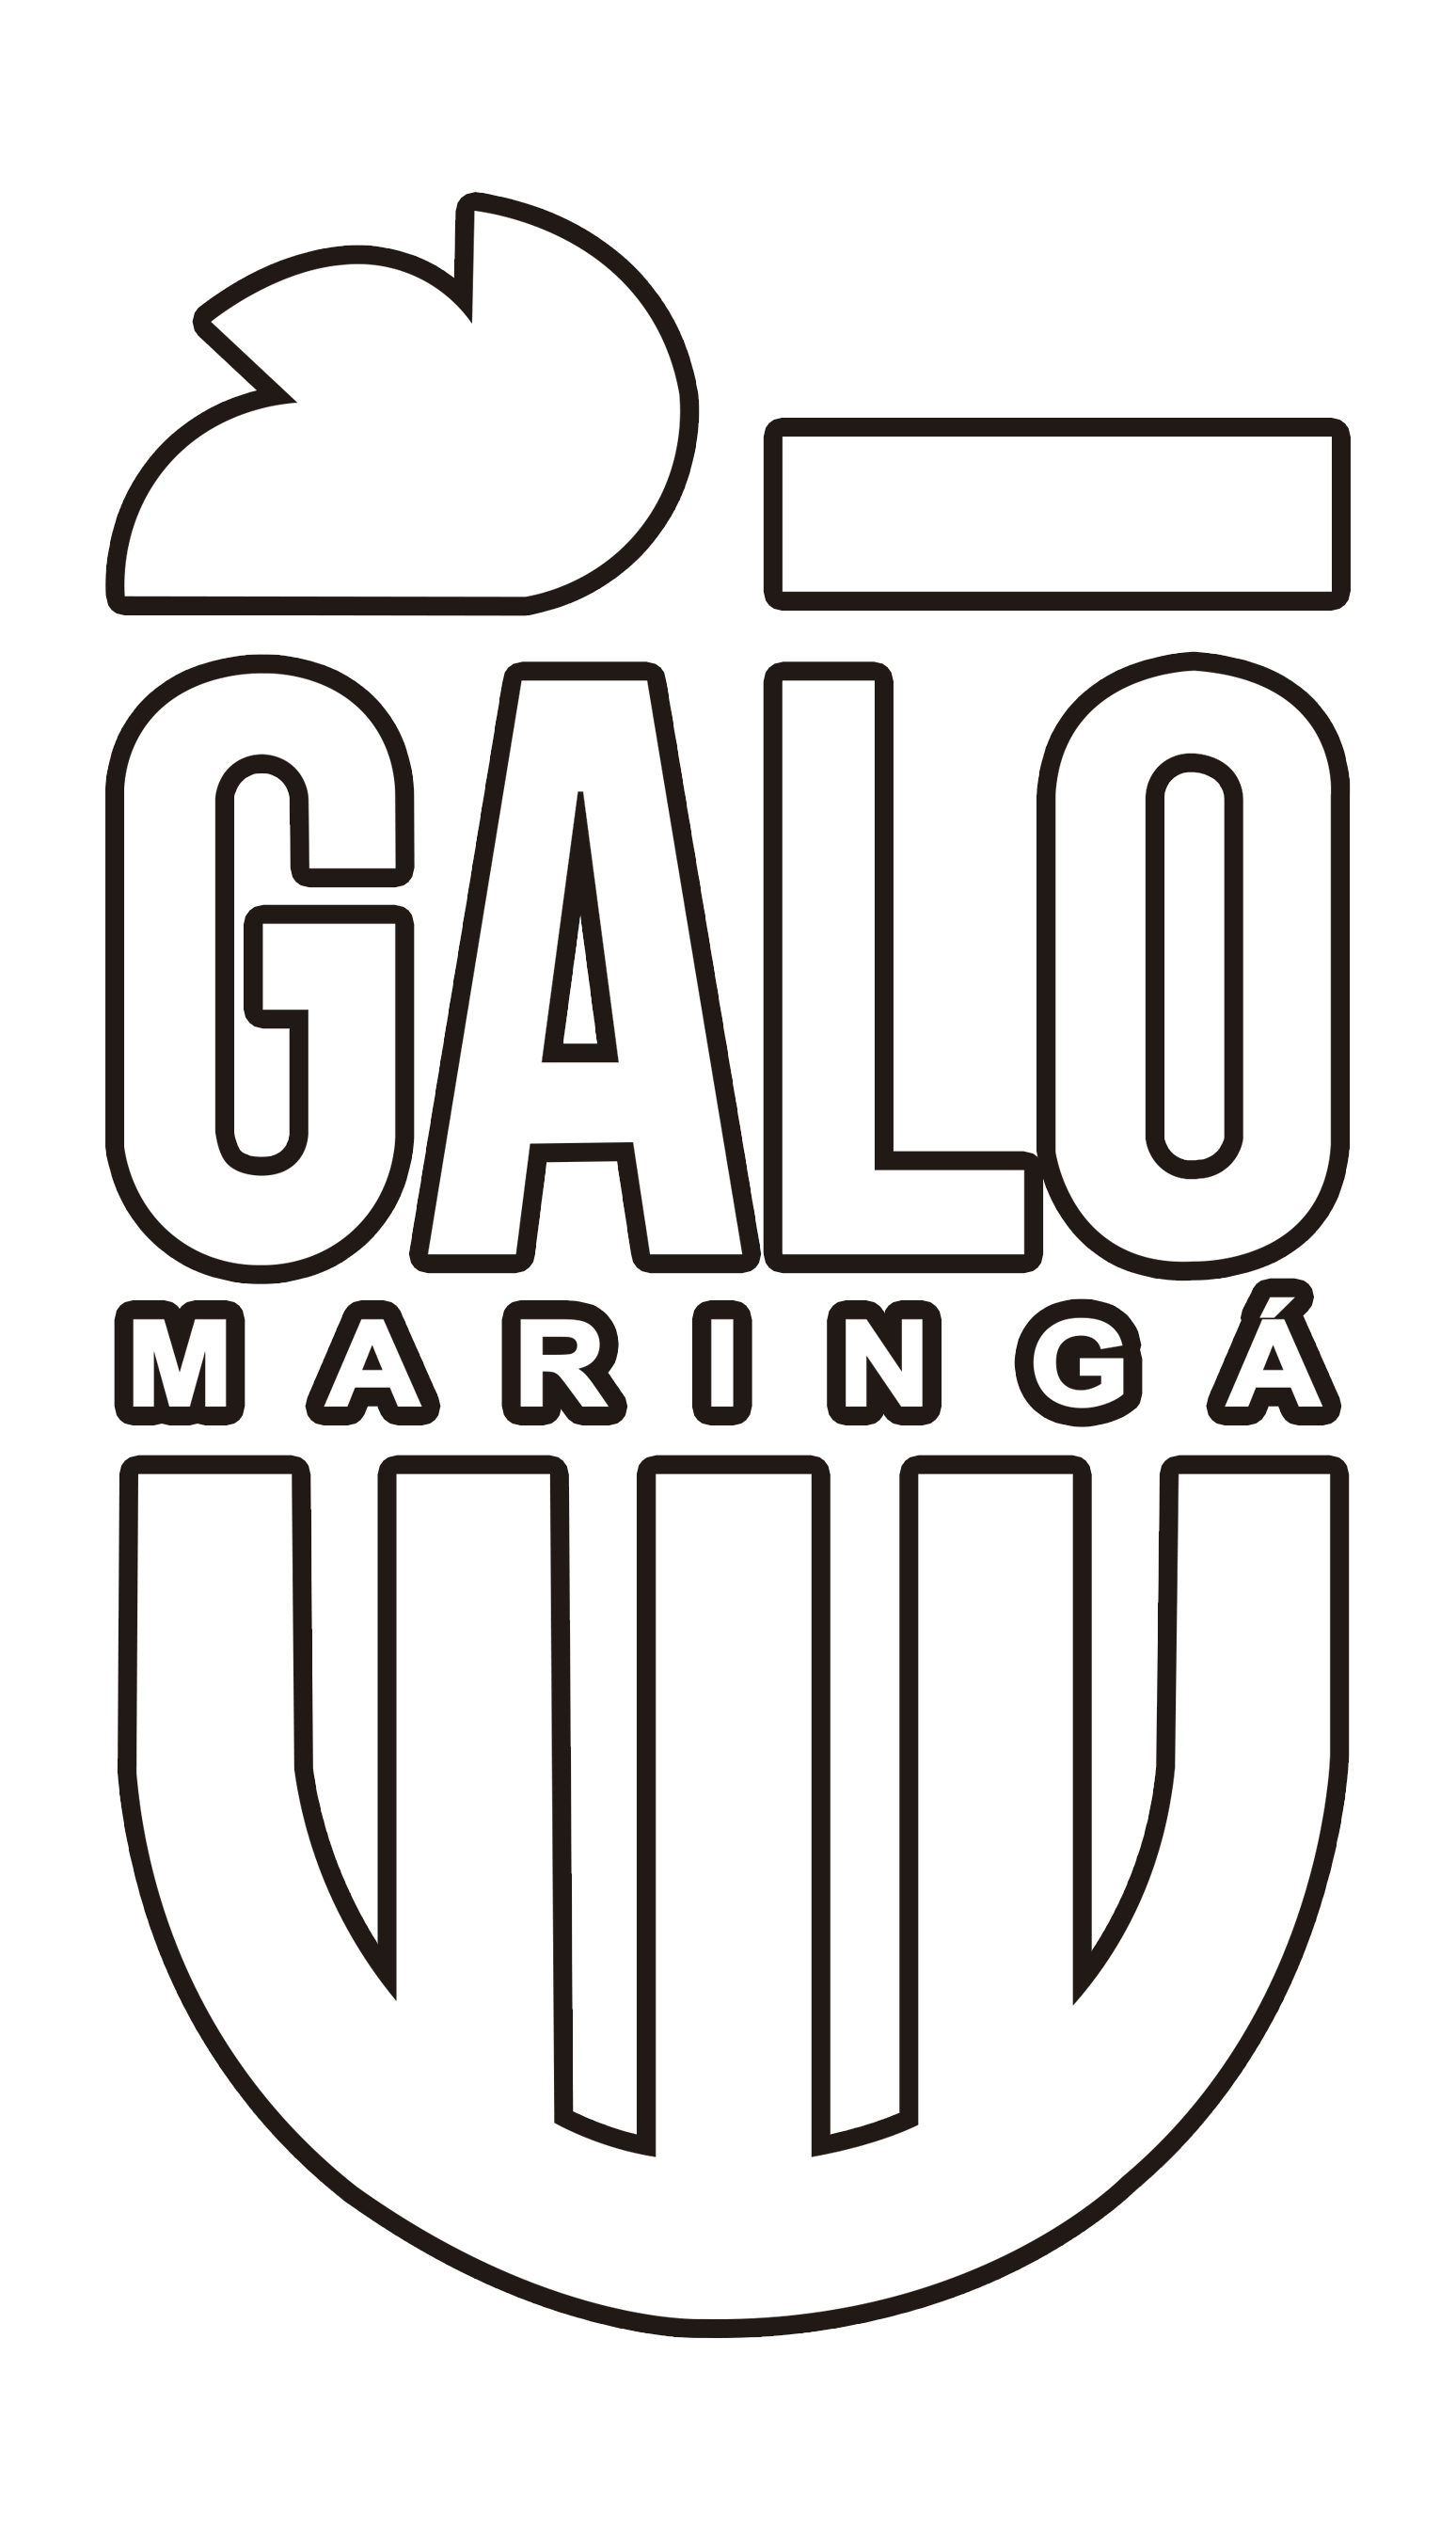 Galo Maringá